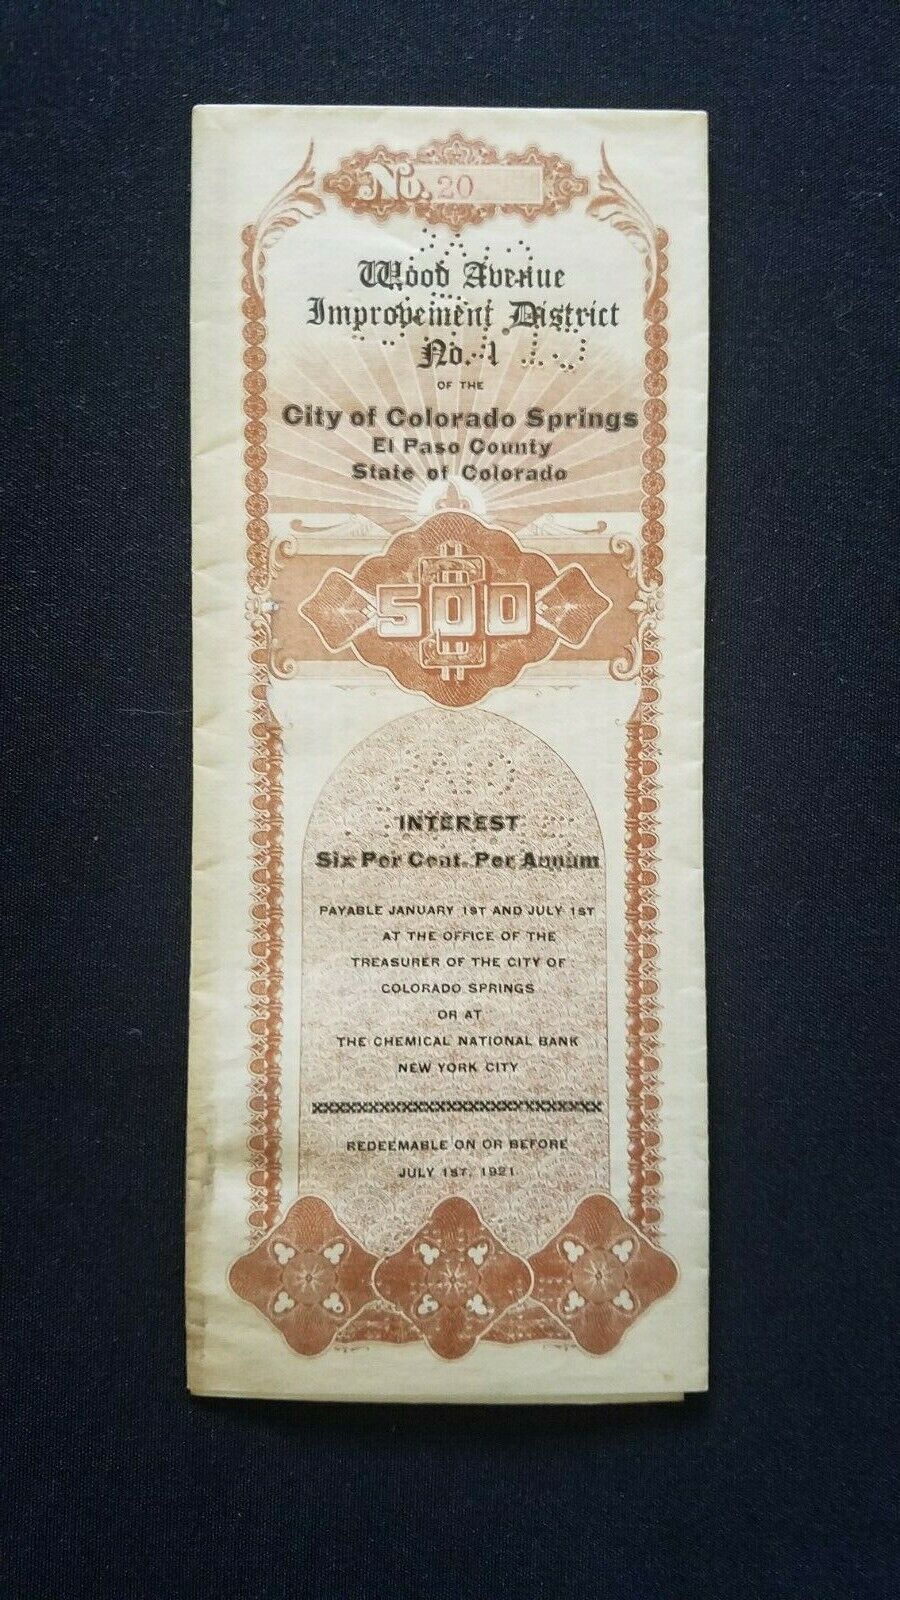 Colorado Springs, July 1910, Original $500 Bond Document